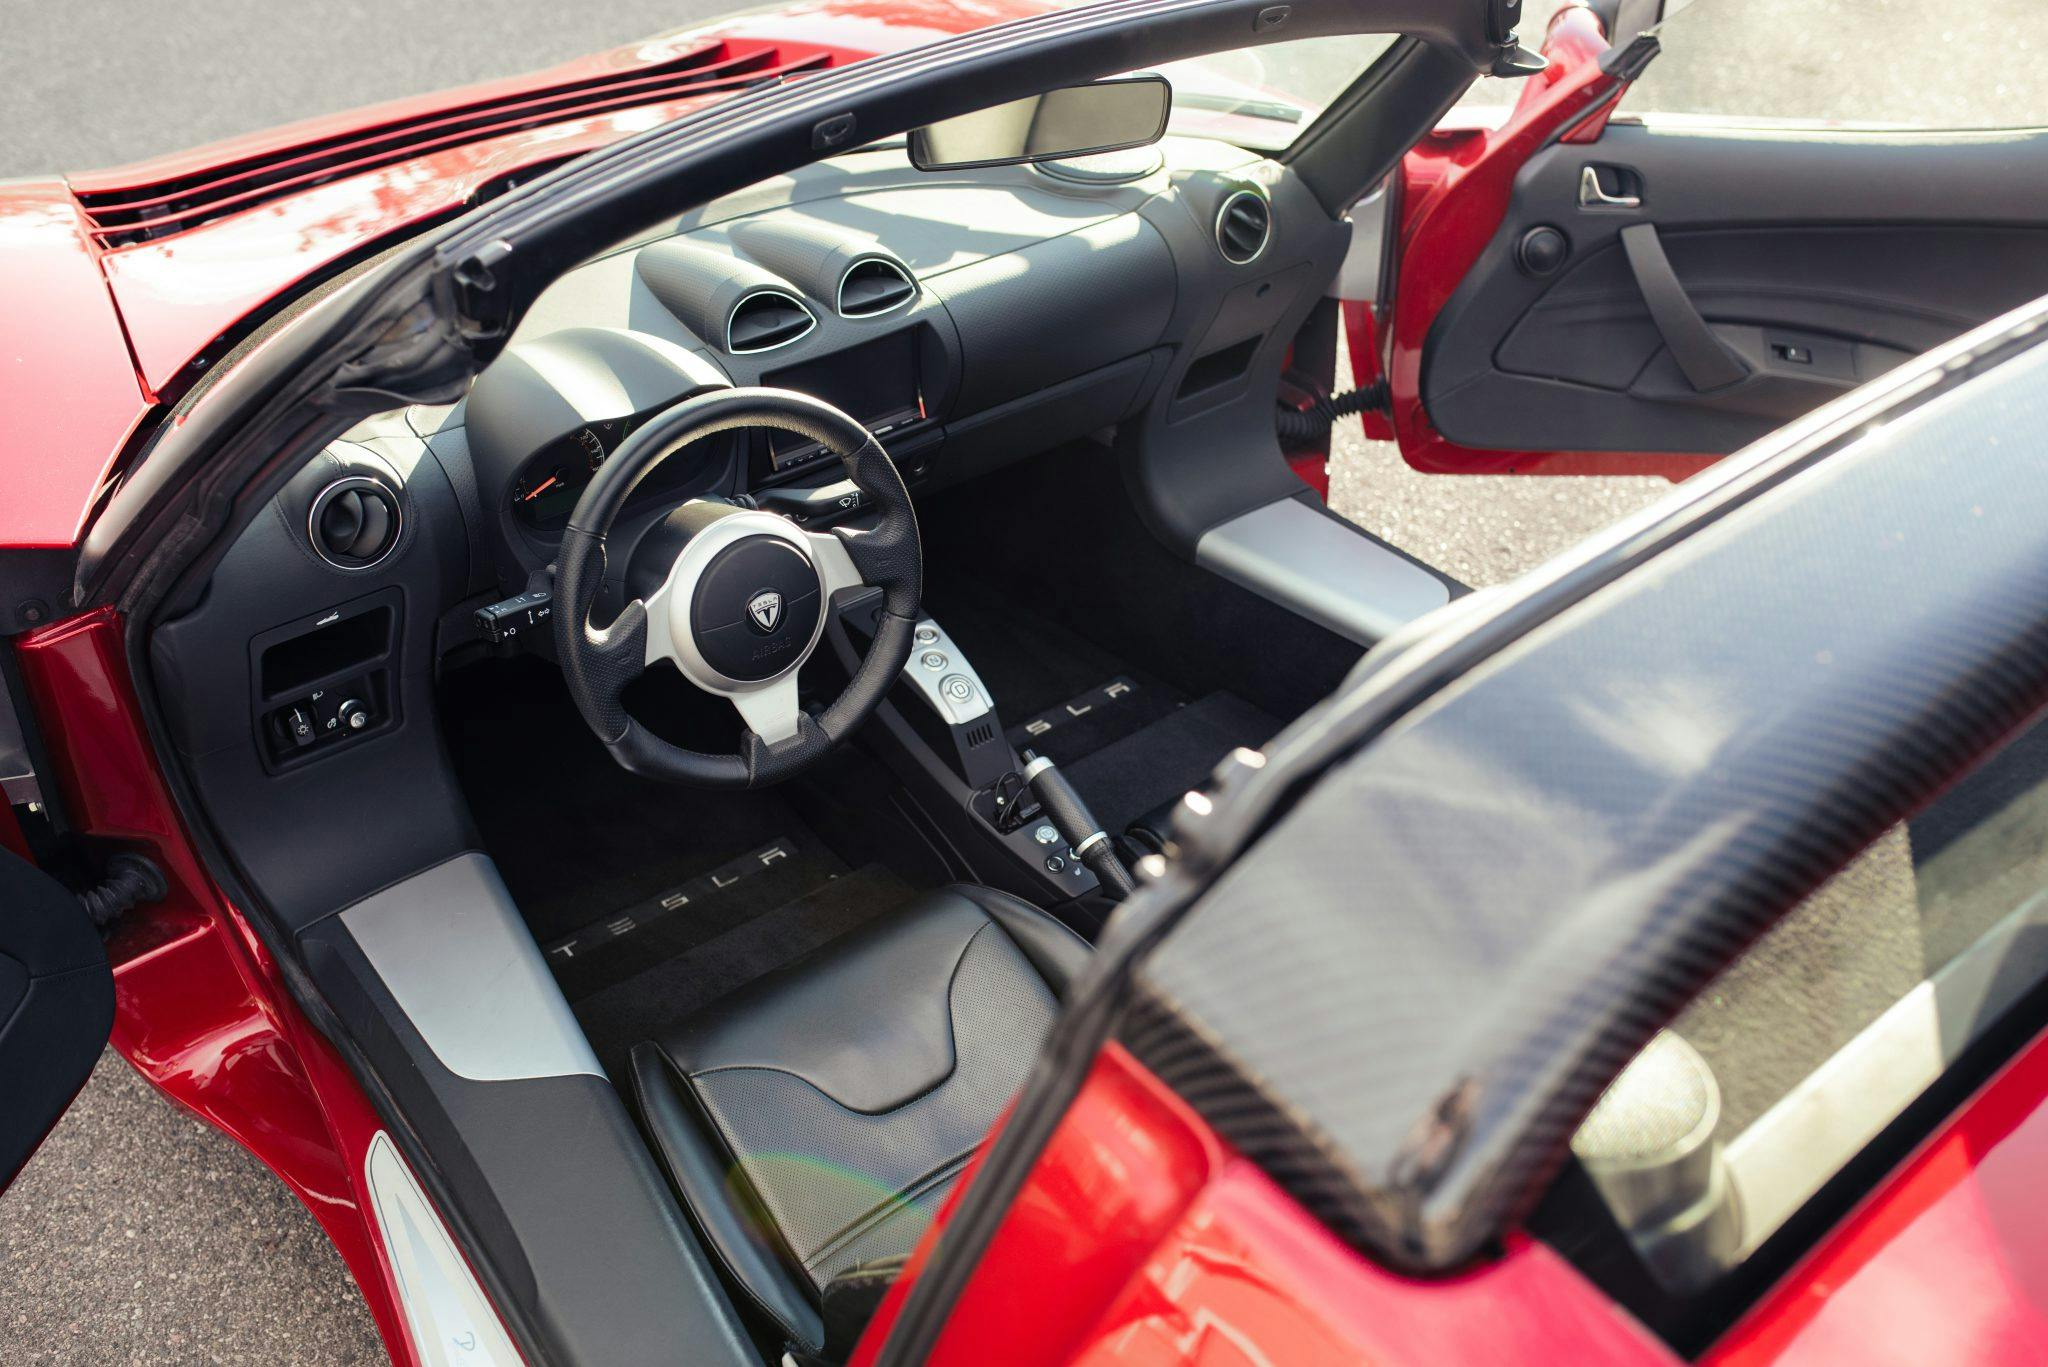 Tesla Roadster interior high angle